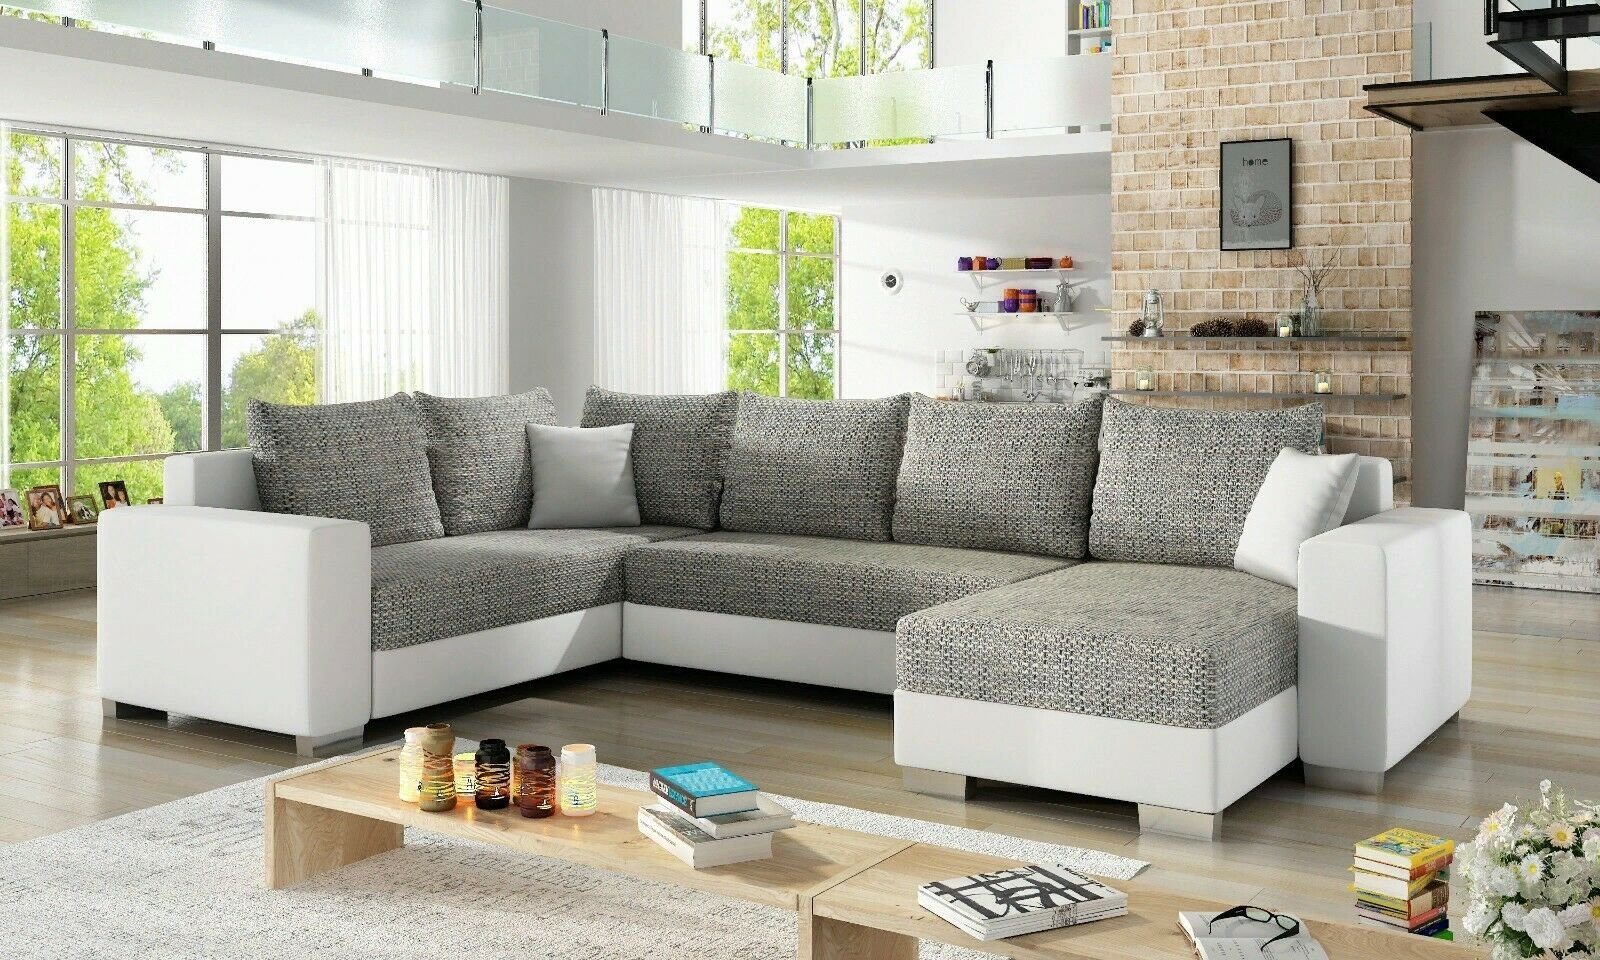 JVmoebel Ecksofa Mit Bettfunktion / Weiß Hellgrau Ecksofa Polster Bettfunktion Sofa Couch Design Schlafsofa Textil